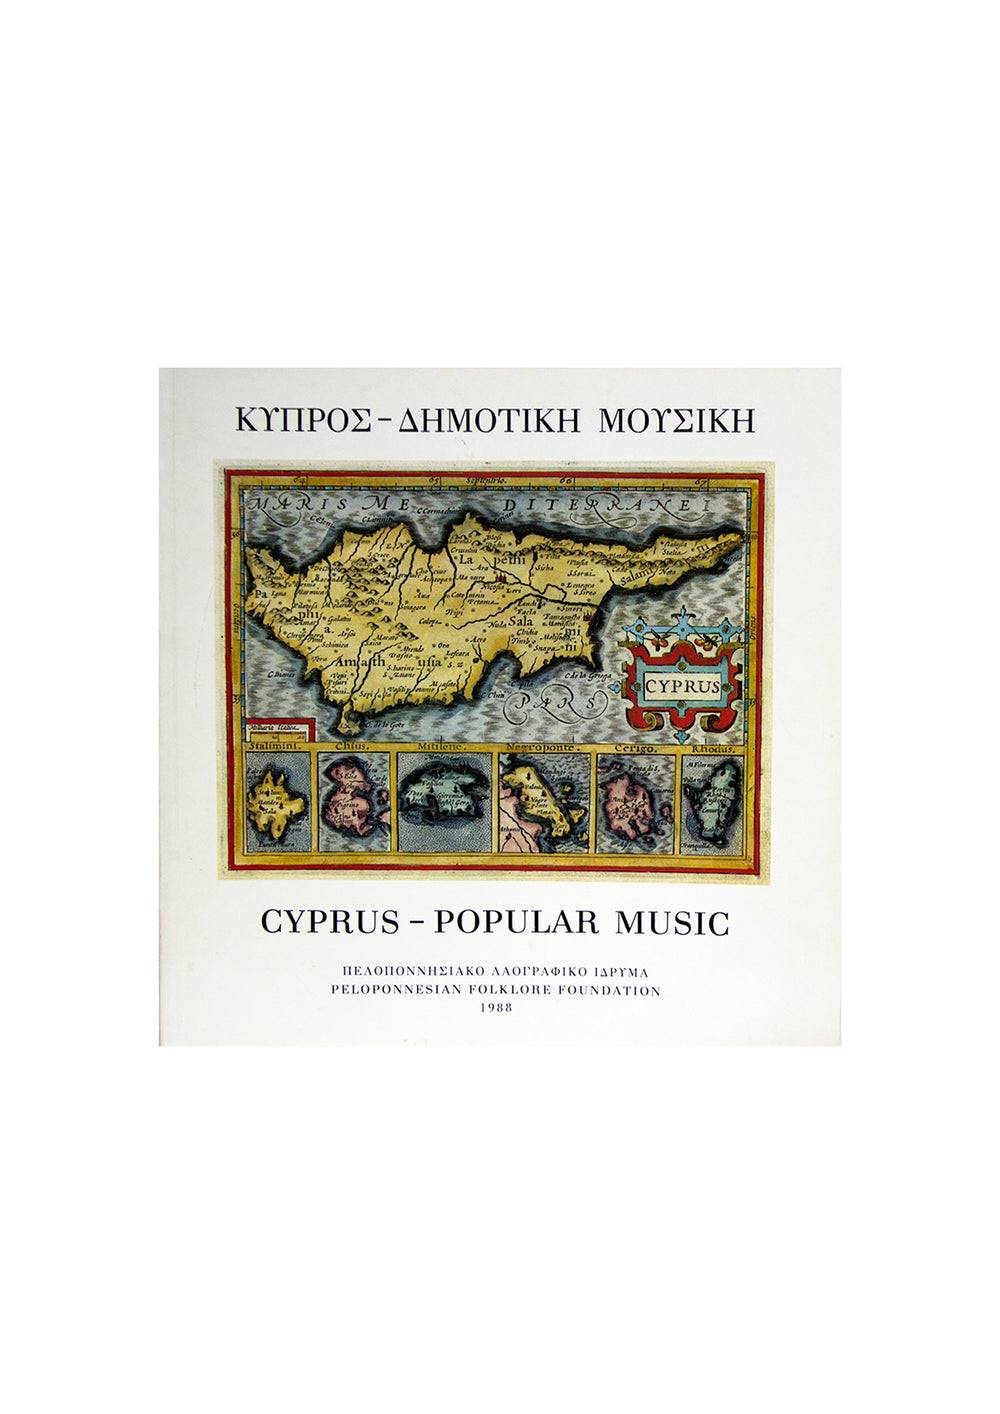 Κύπρος - Δημοτική Μουσική